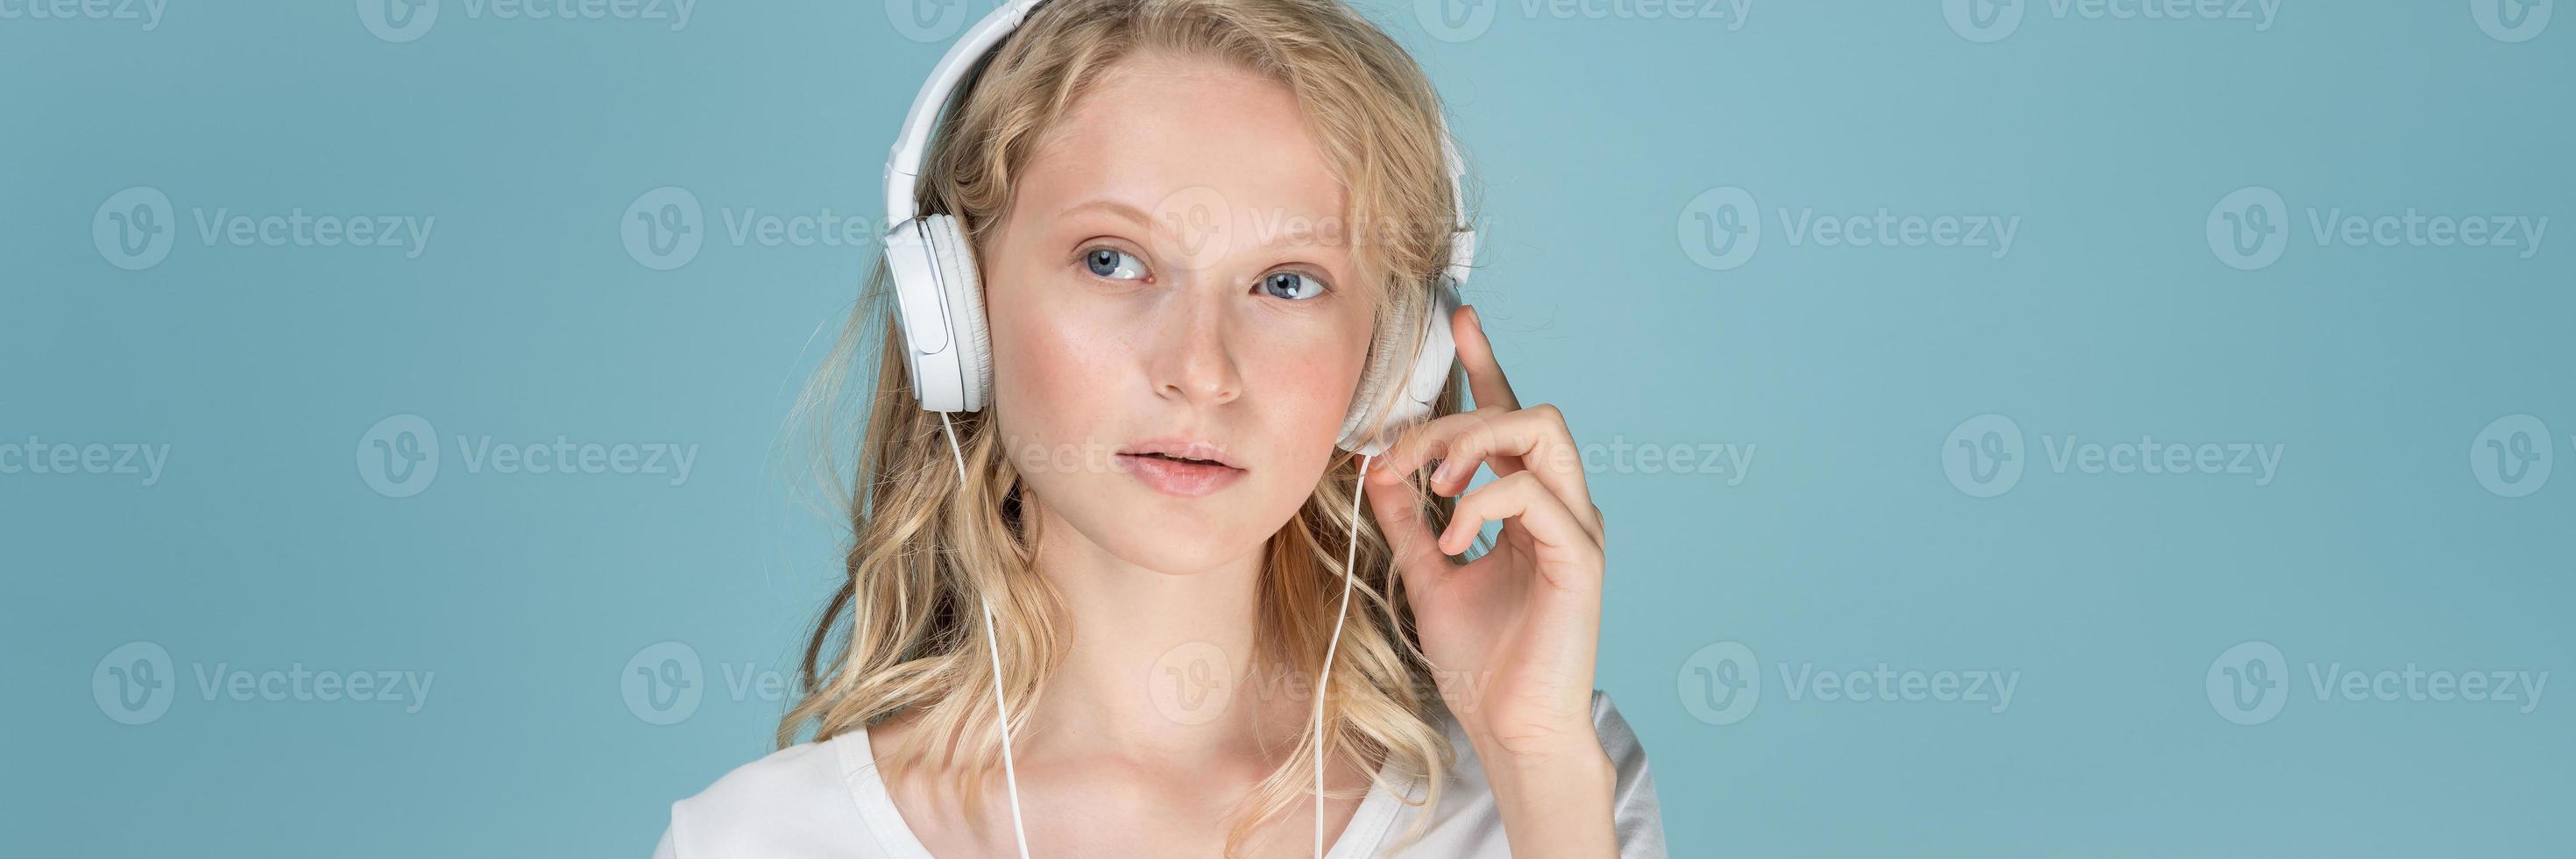 bannière longue largeur avec portrait de jeune femme écoutant de la musique via des écouteurs photo